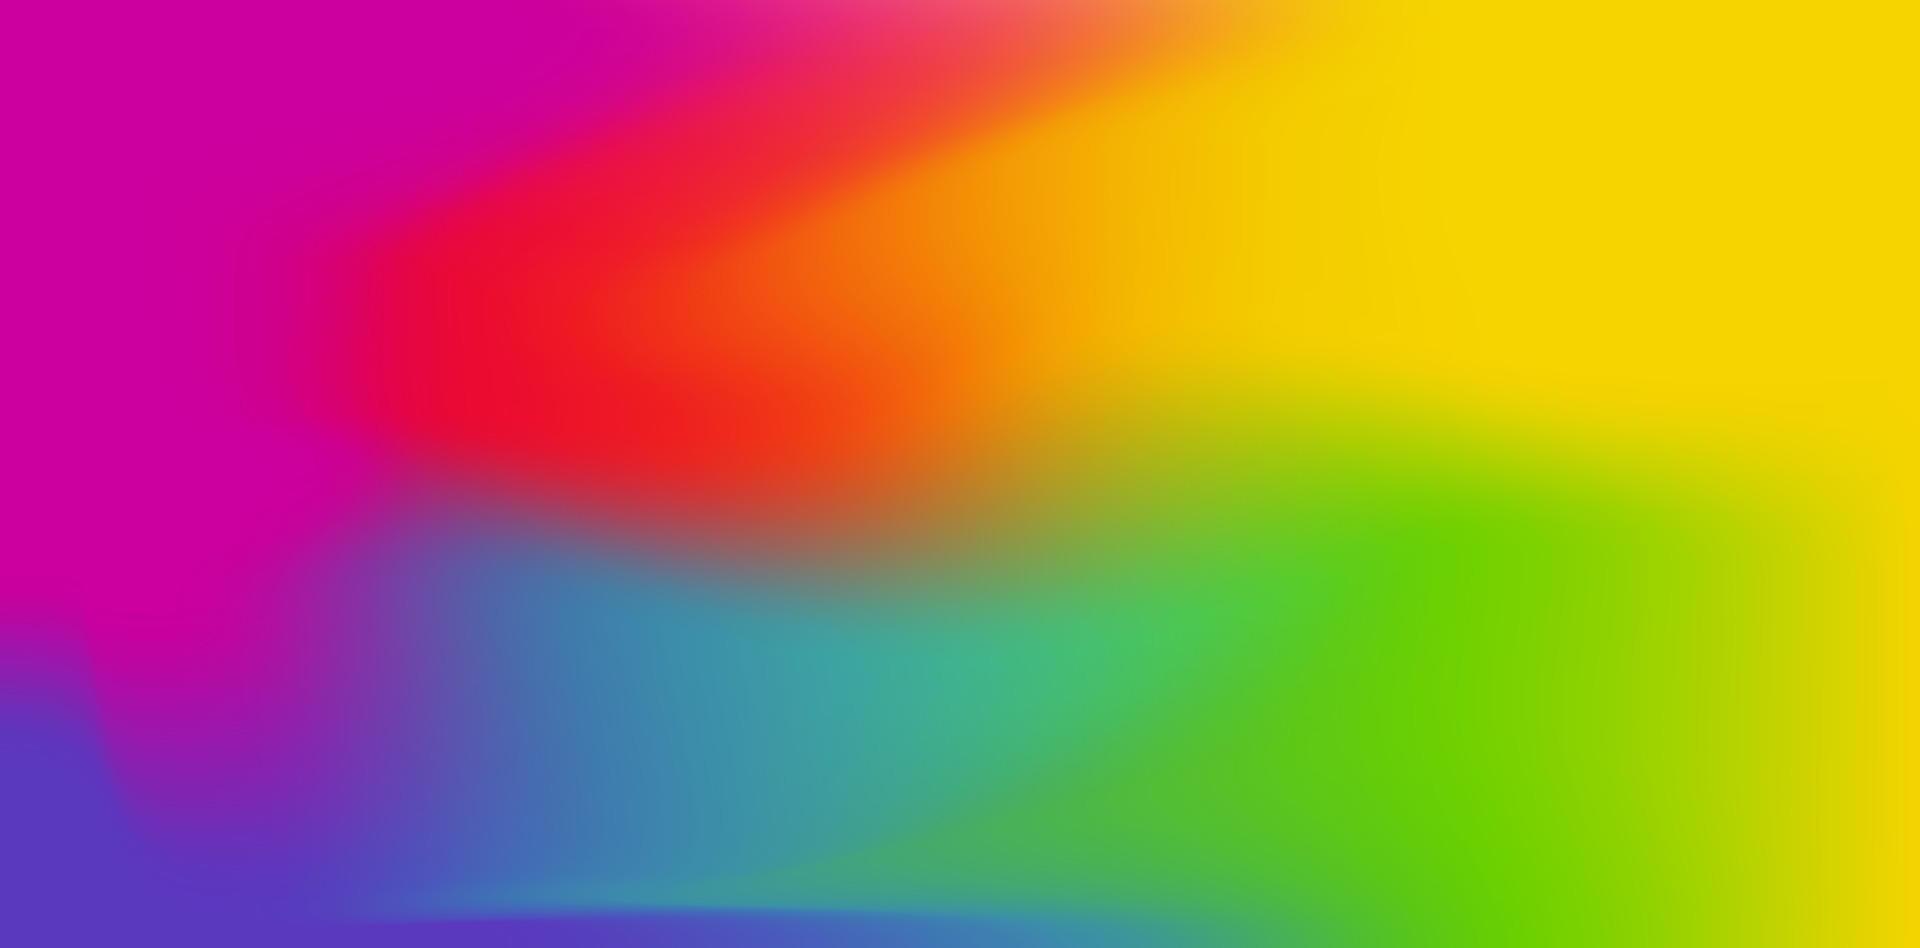 holografiska folie. regnbågsskimrande folie. tekniskt fel hologram. pastell neon regnbåge. ultraviolett metallisk papper. mall för presentation. abstrakt färgrik lutning bakgrund. vektor